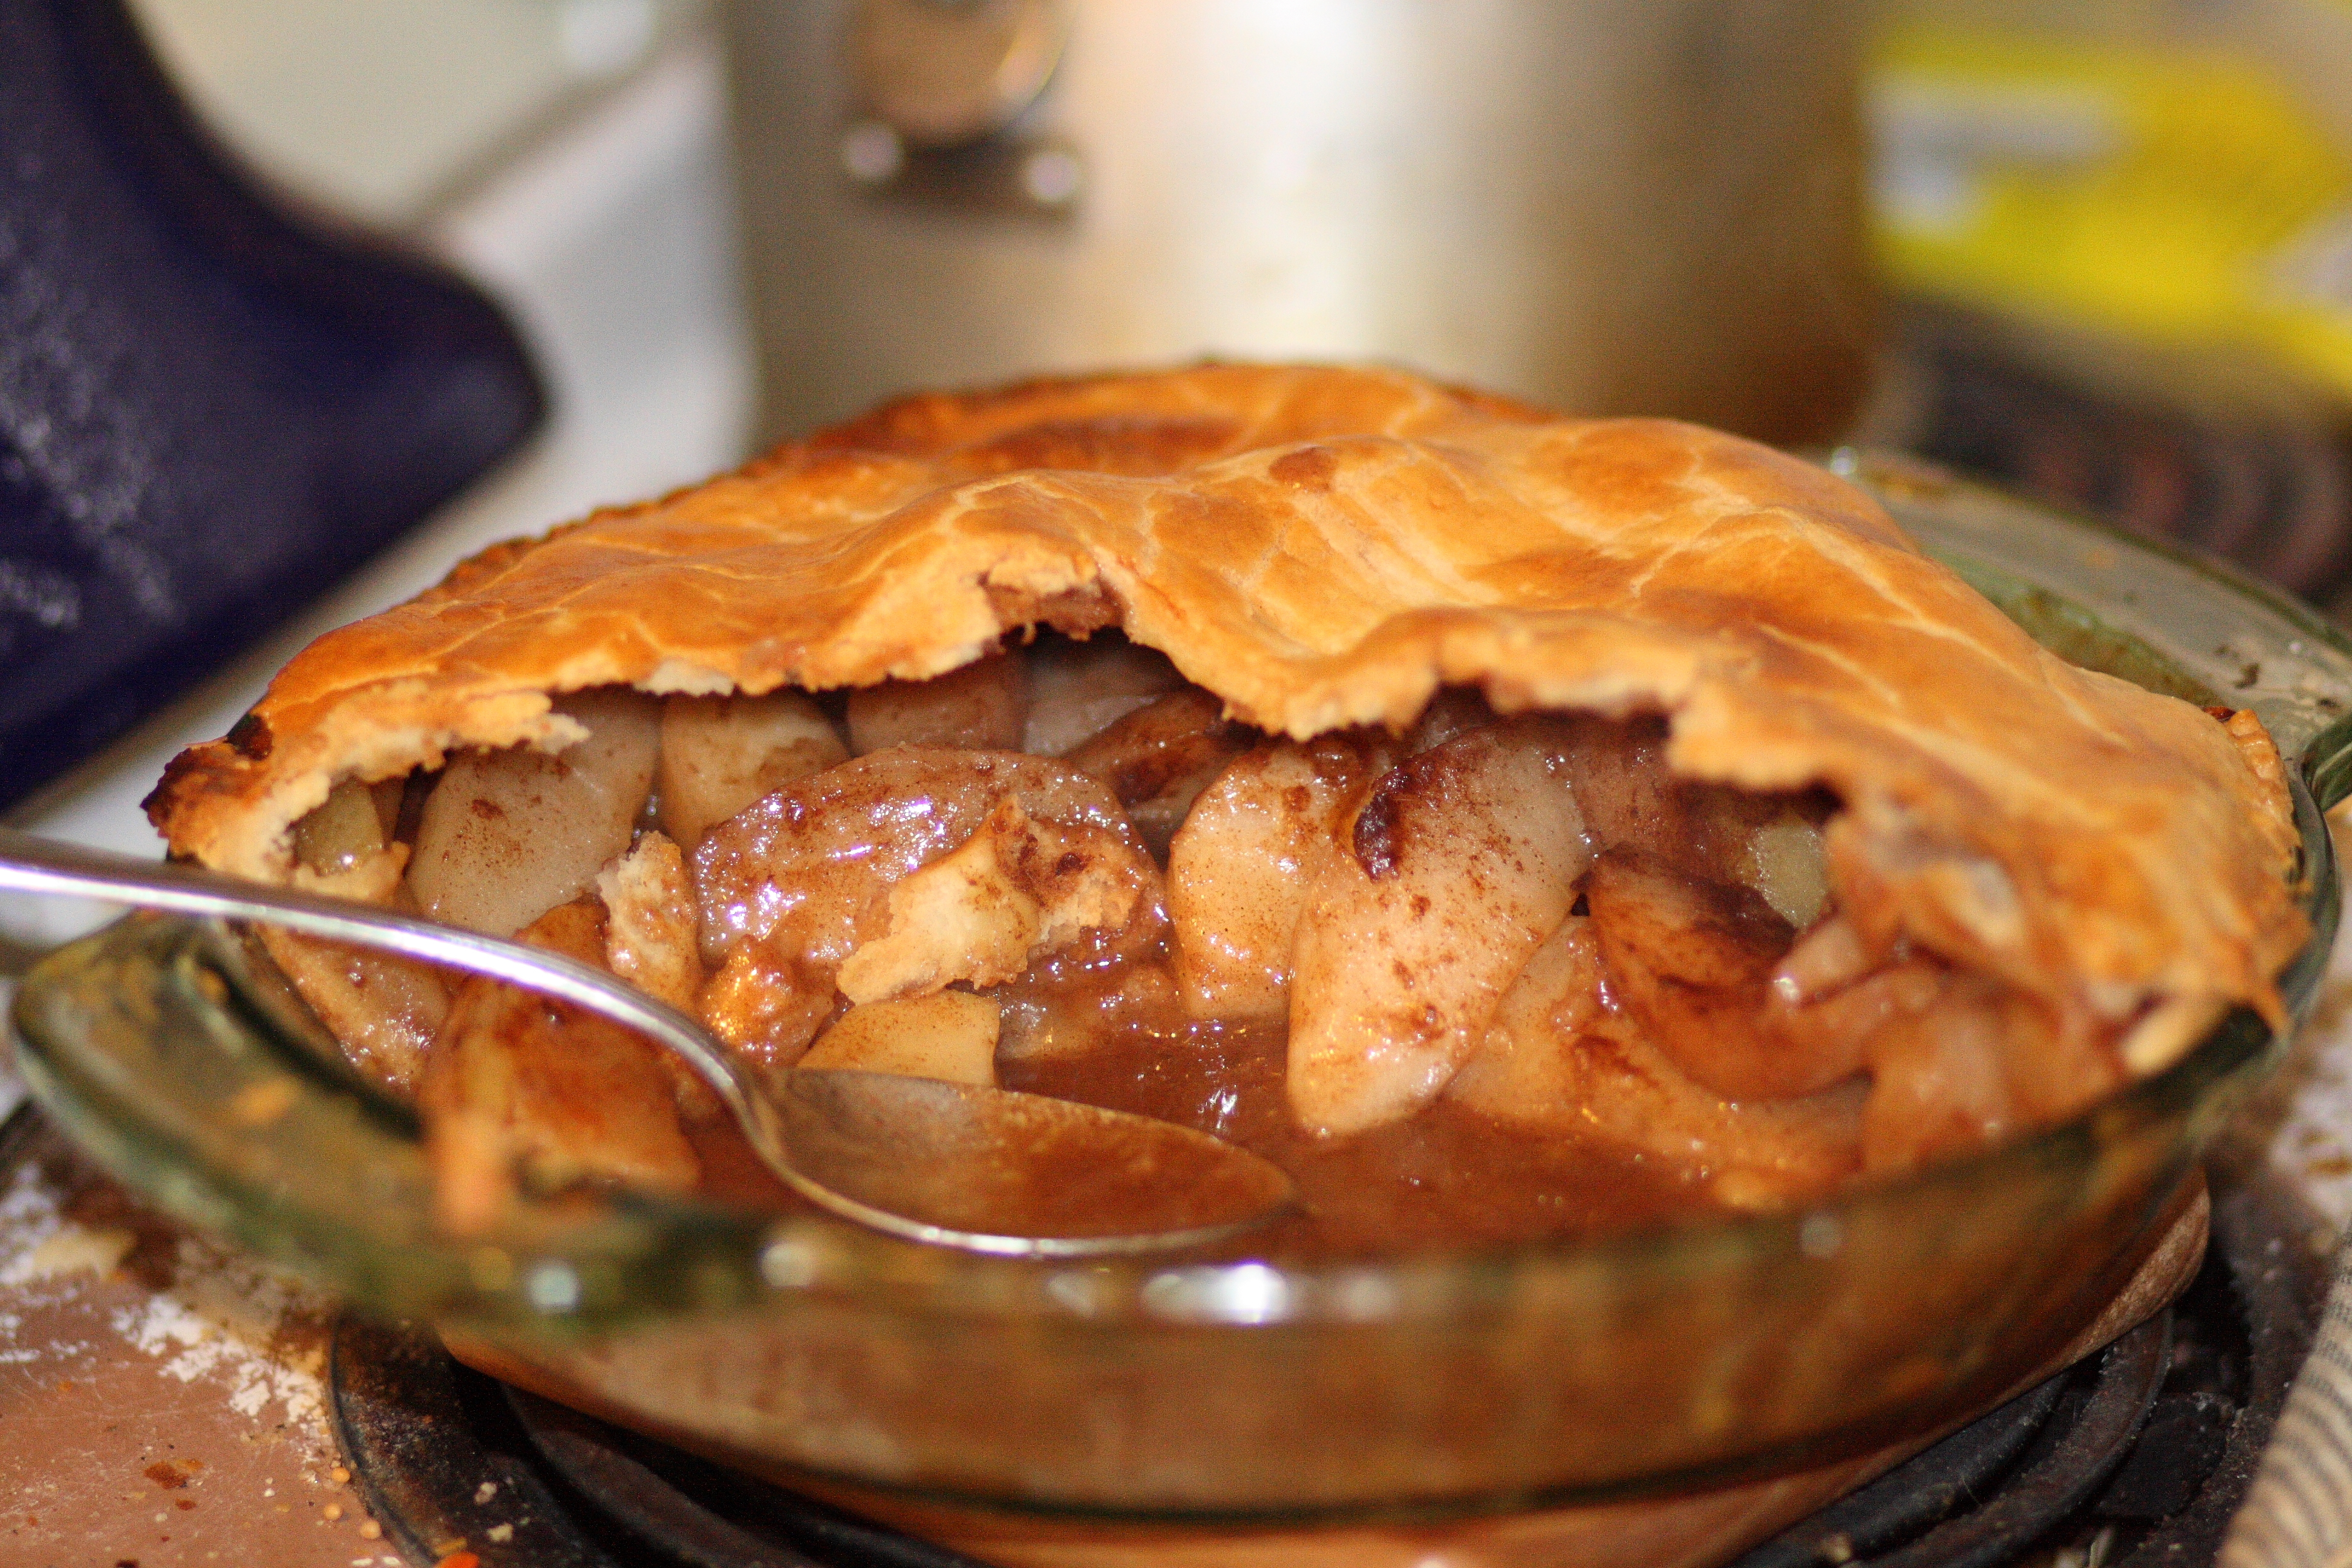 File:Partly eaten apple pie.jpg - Wikimedia Commons